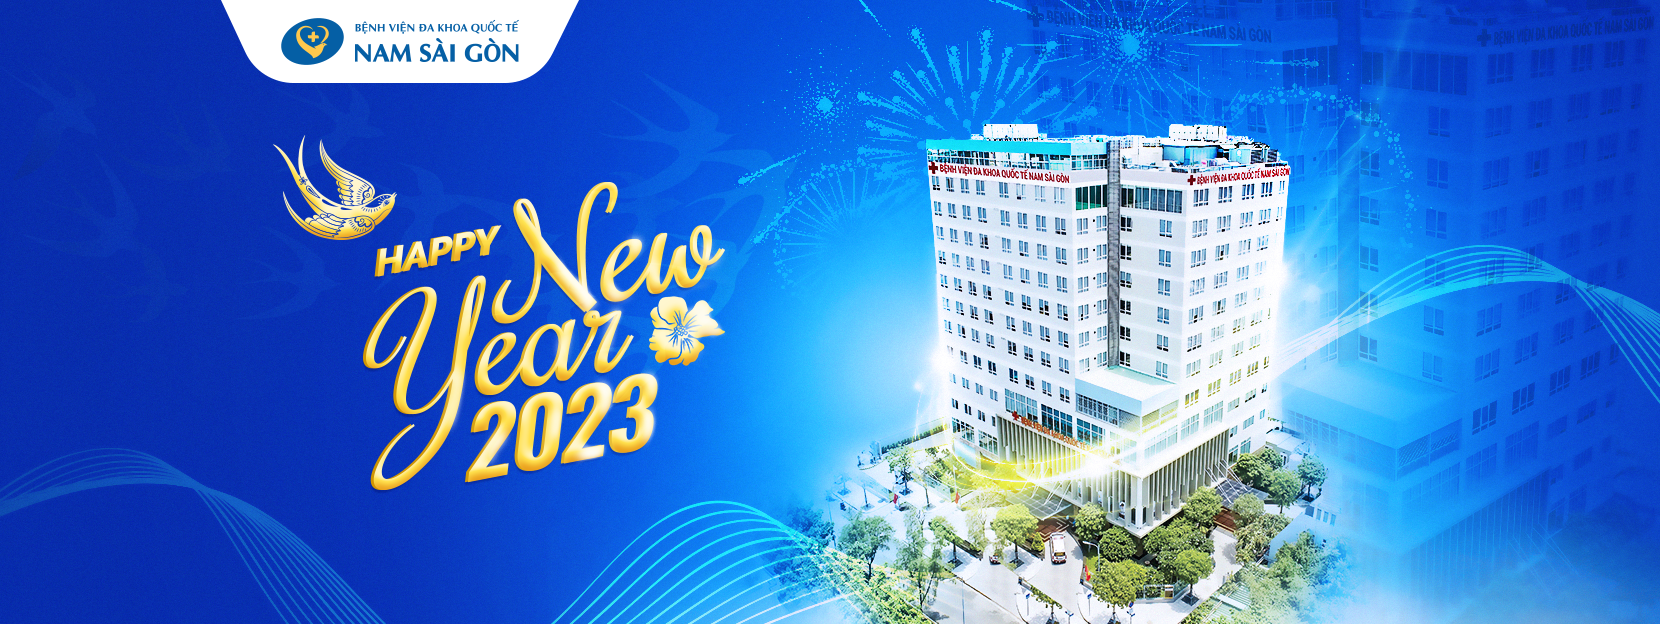 THÔNG BÁO NGHỈ TẾT DƯƠNG 2023 | Bệnh viện Đa khoa Quốc tế Nam Sài Gòn